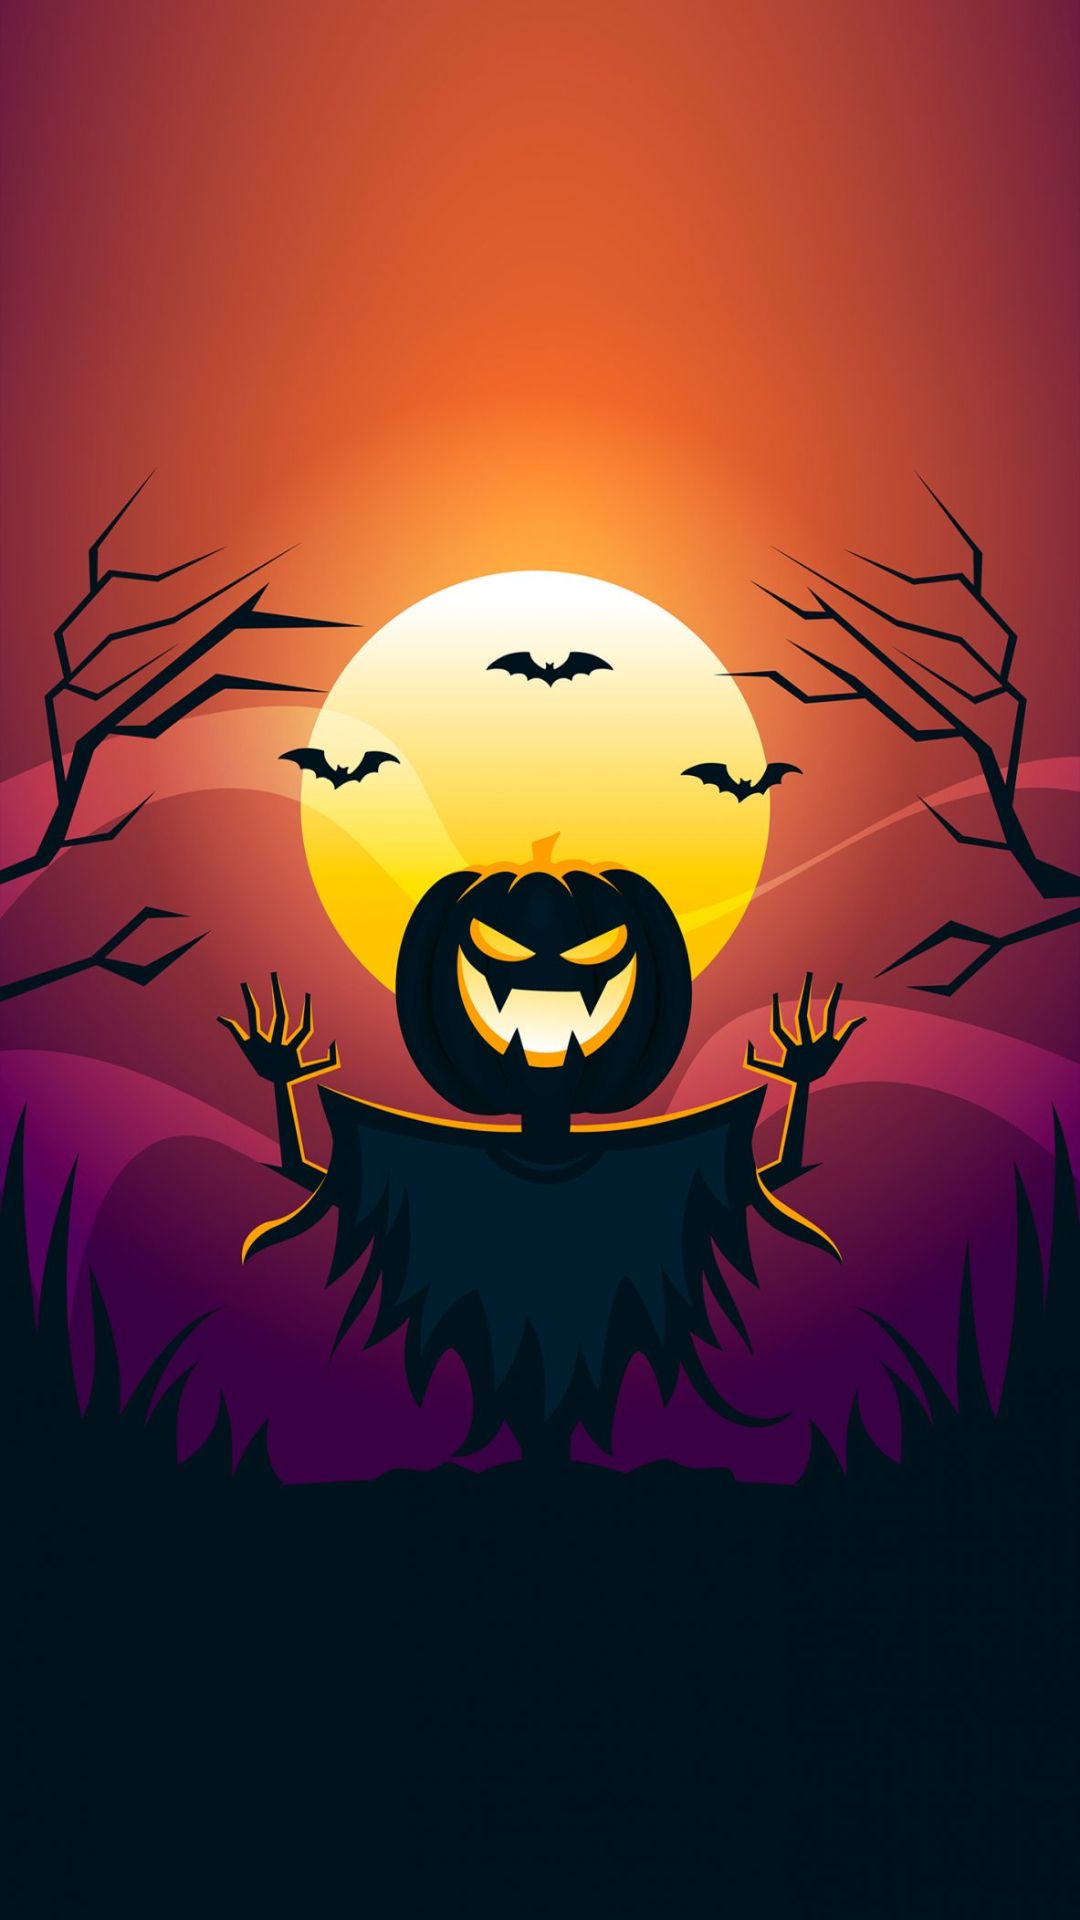 Happy Halloween 2021 Wallpaper Halloween Background Download